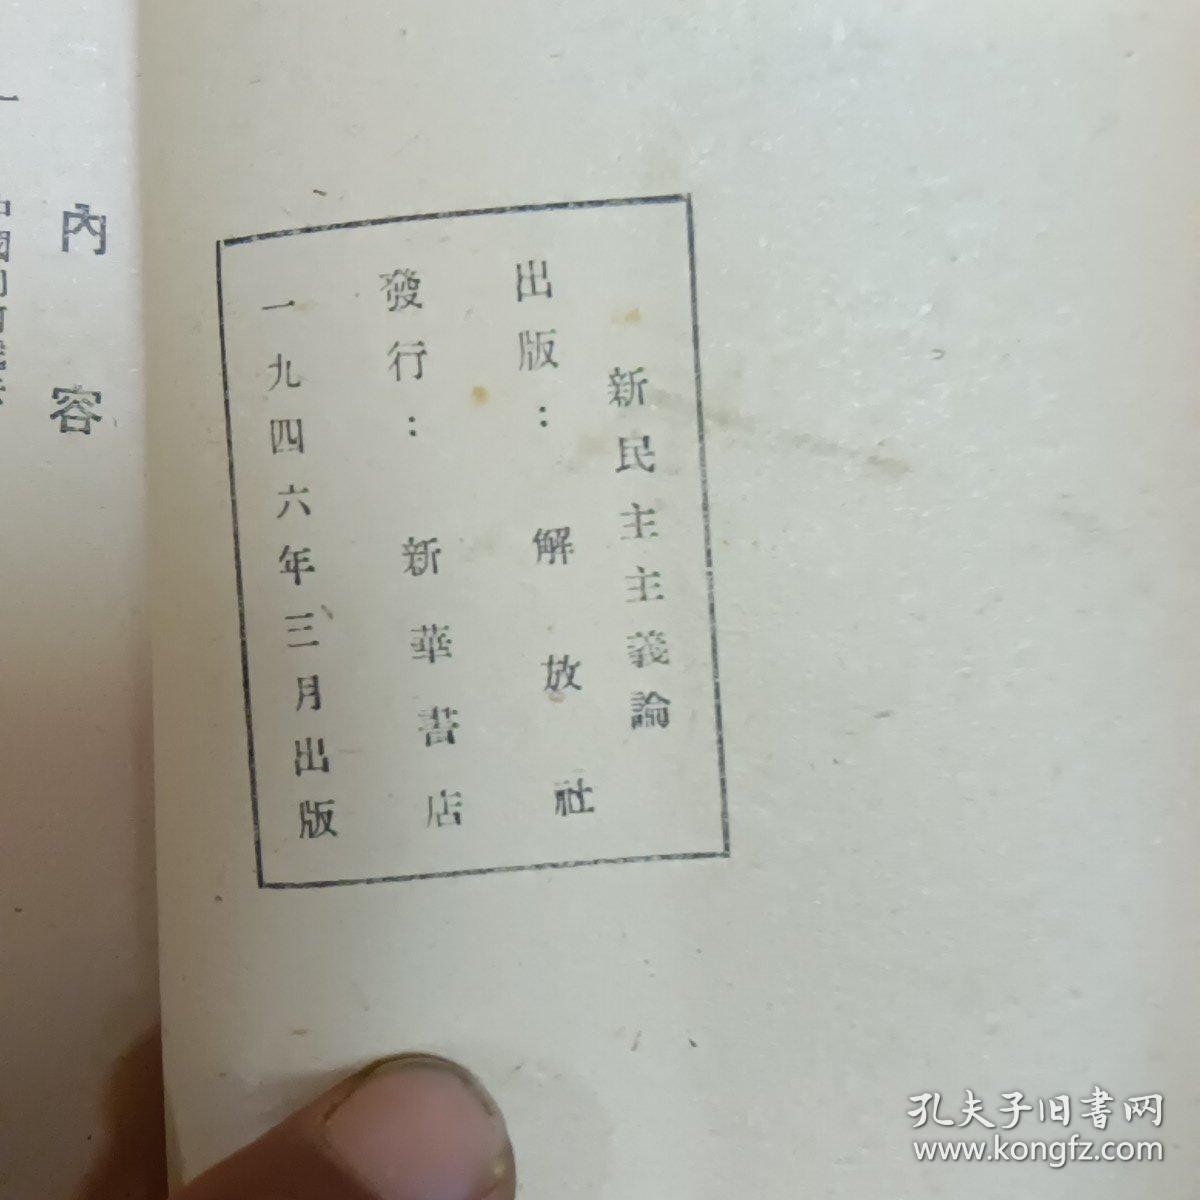 民国旧书(新民主主义论)毛泽东著、1946年出版繁体竖版